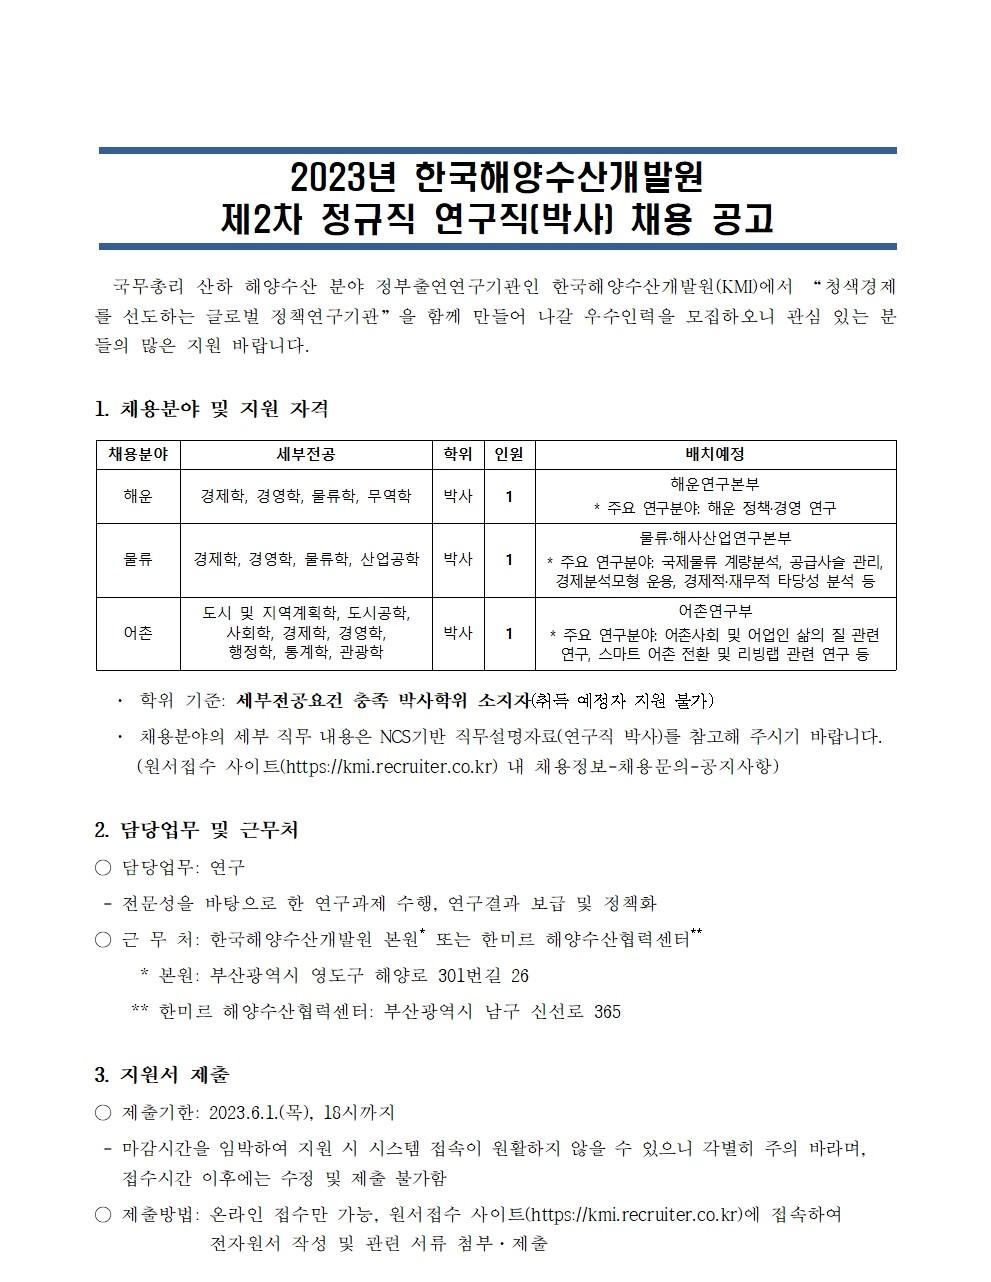 (1/4) 한국해양수산개발원 2023년 제2차 정규직 연구직(박사) 채용 공고문 - 자세한 내용은 하단 참조